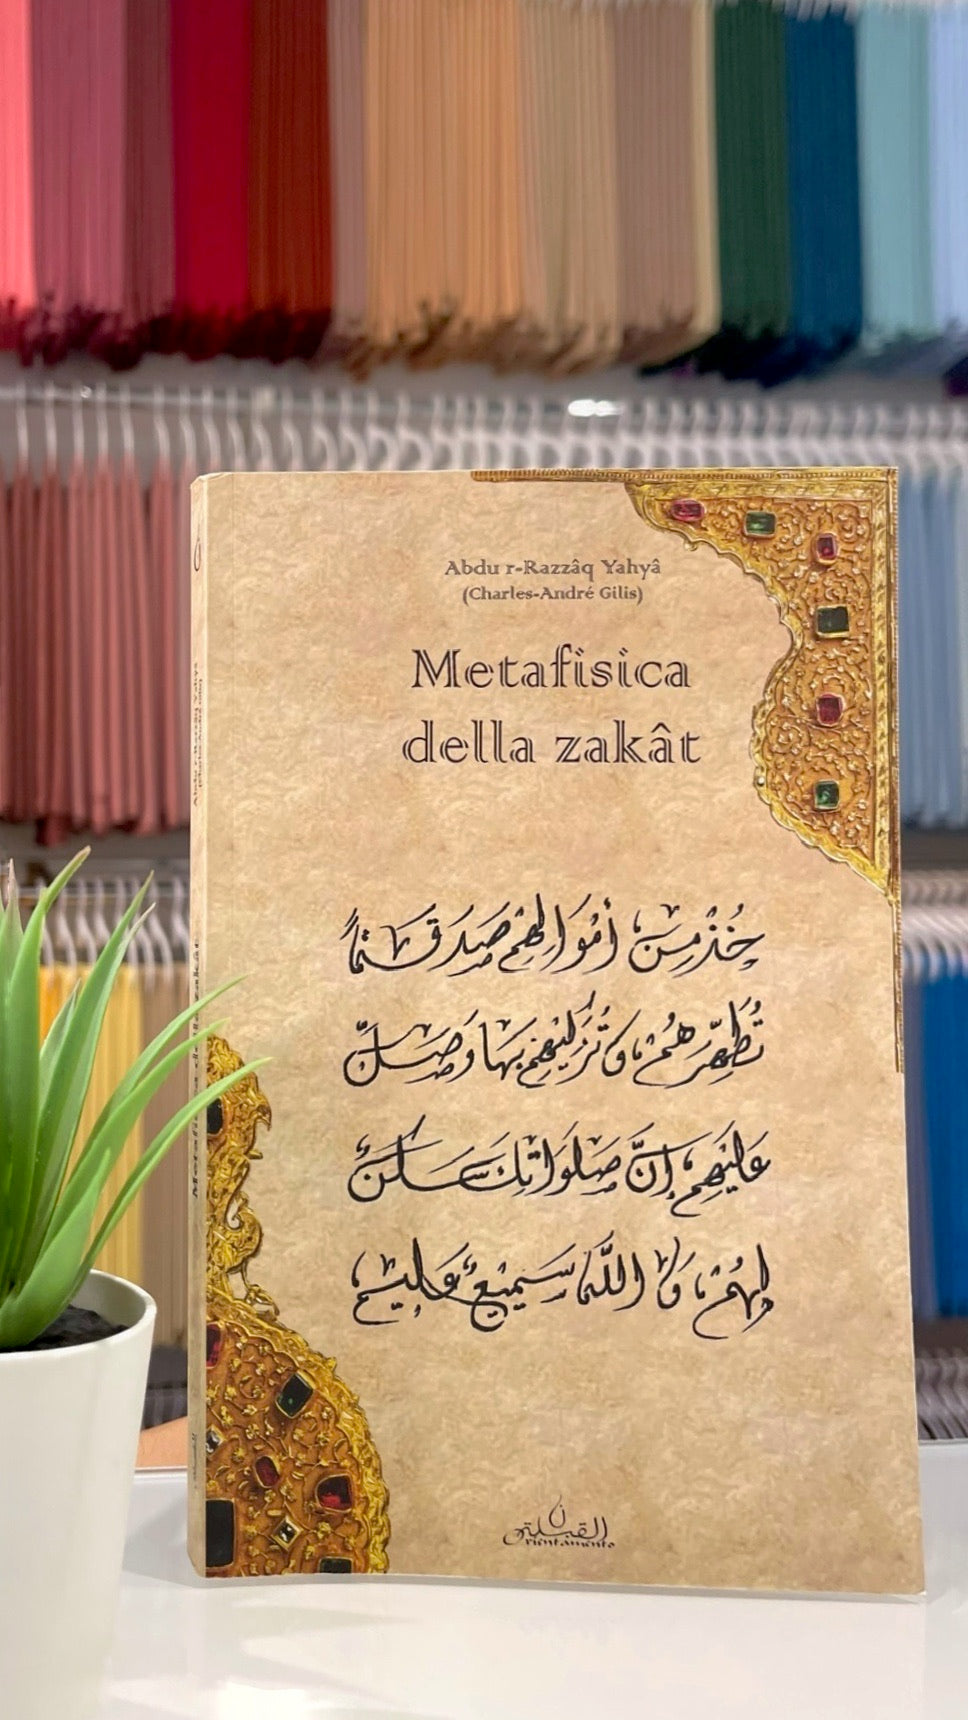 Metafisica della zakat - Hijab Paradise - Libreria islamica- pilastri islam - purificazione - diritto di allah- purificazione 